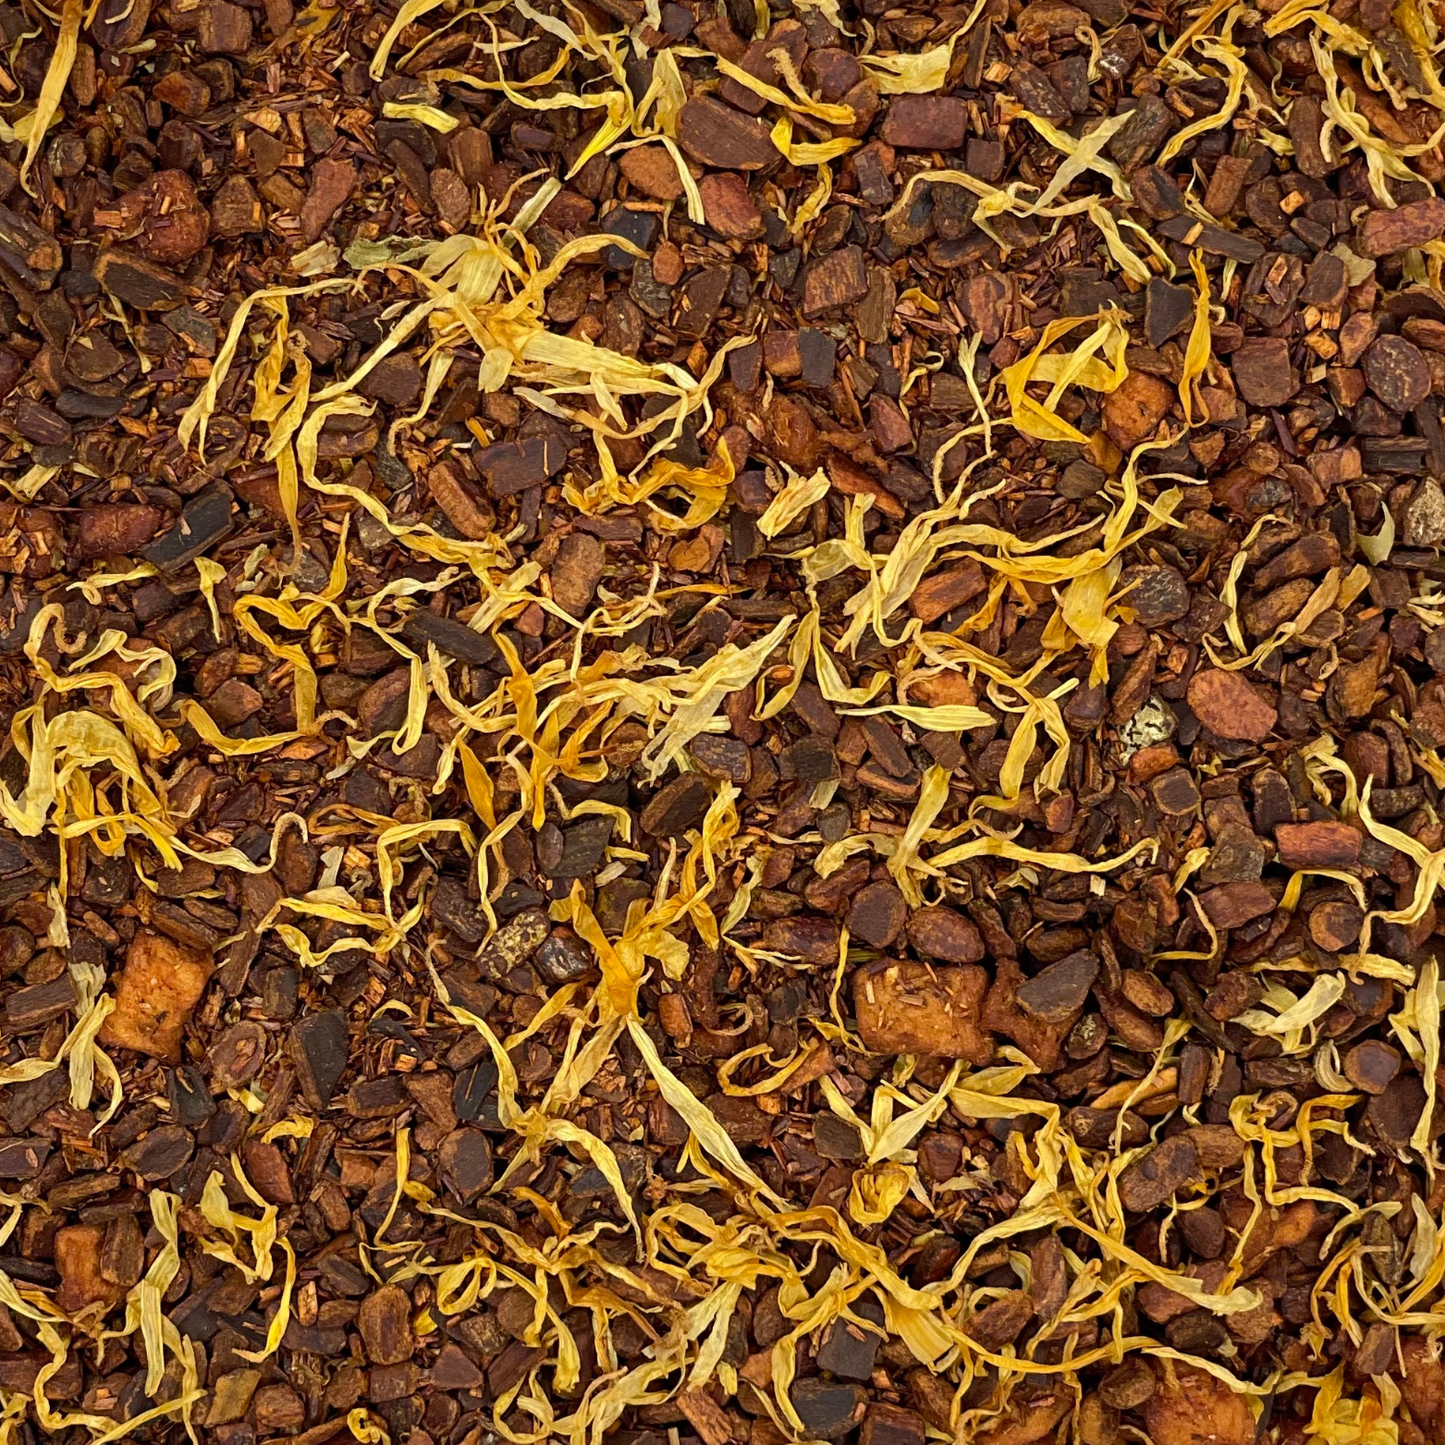 Cinnamon Apple Snap! Tea, Herbal Tea, Loose Leaf Tea, Caffeine Free Tea, Herbal Fruit Tea, Rooibos Tea